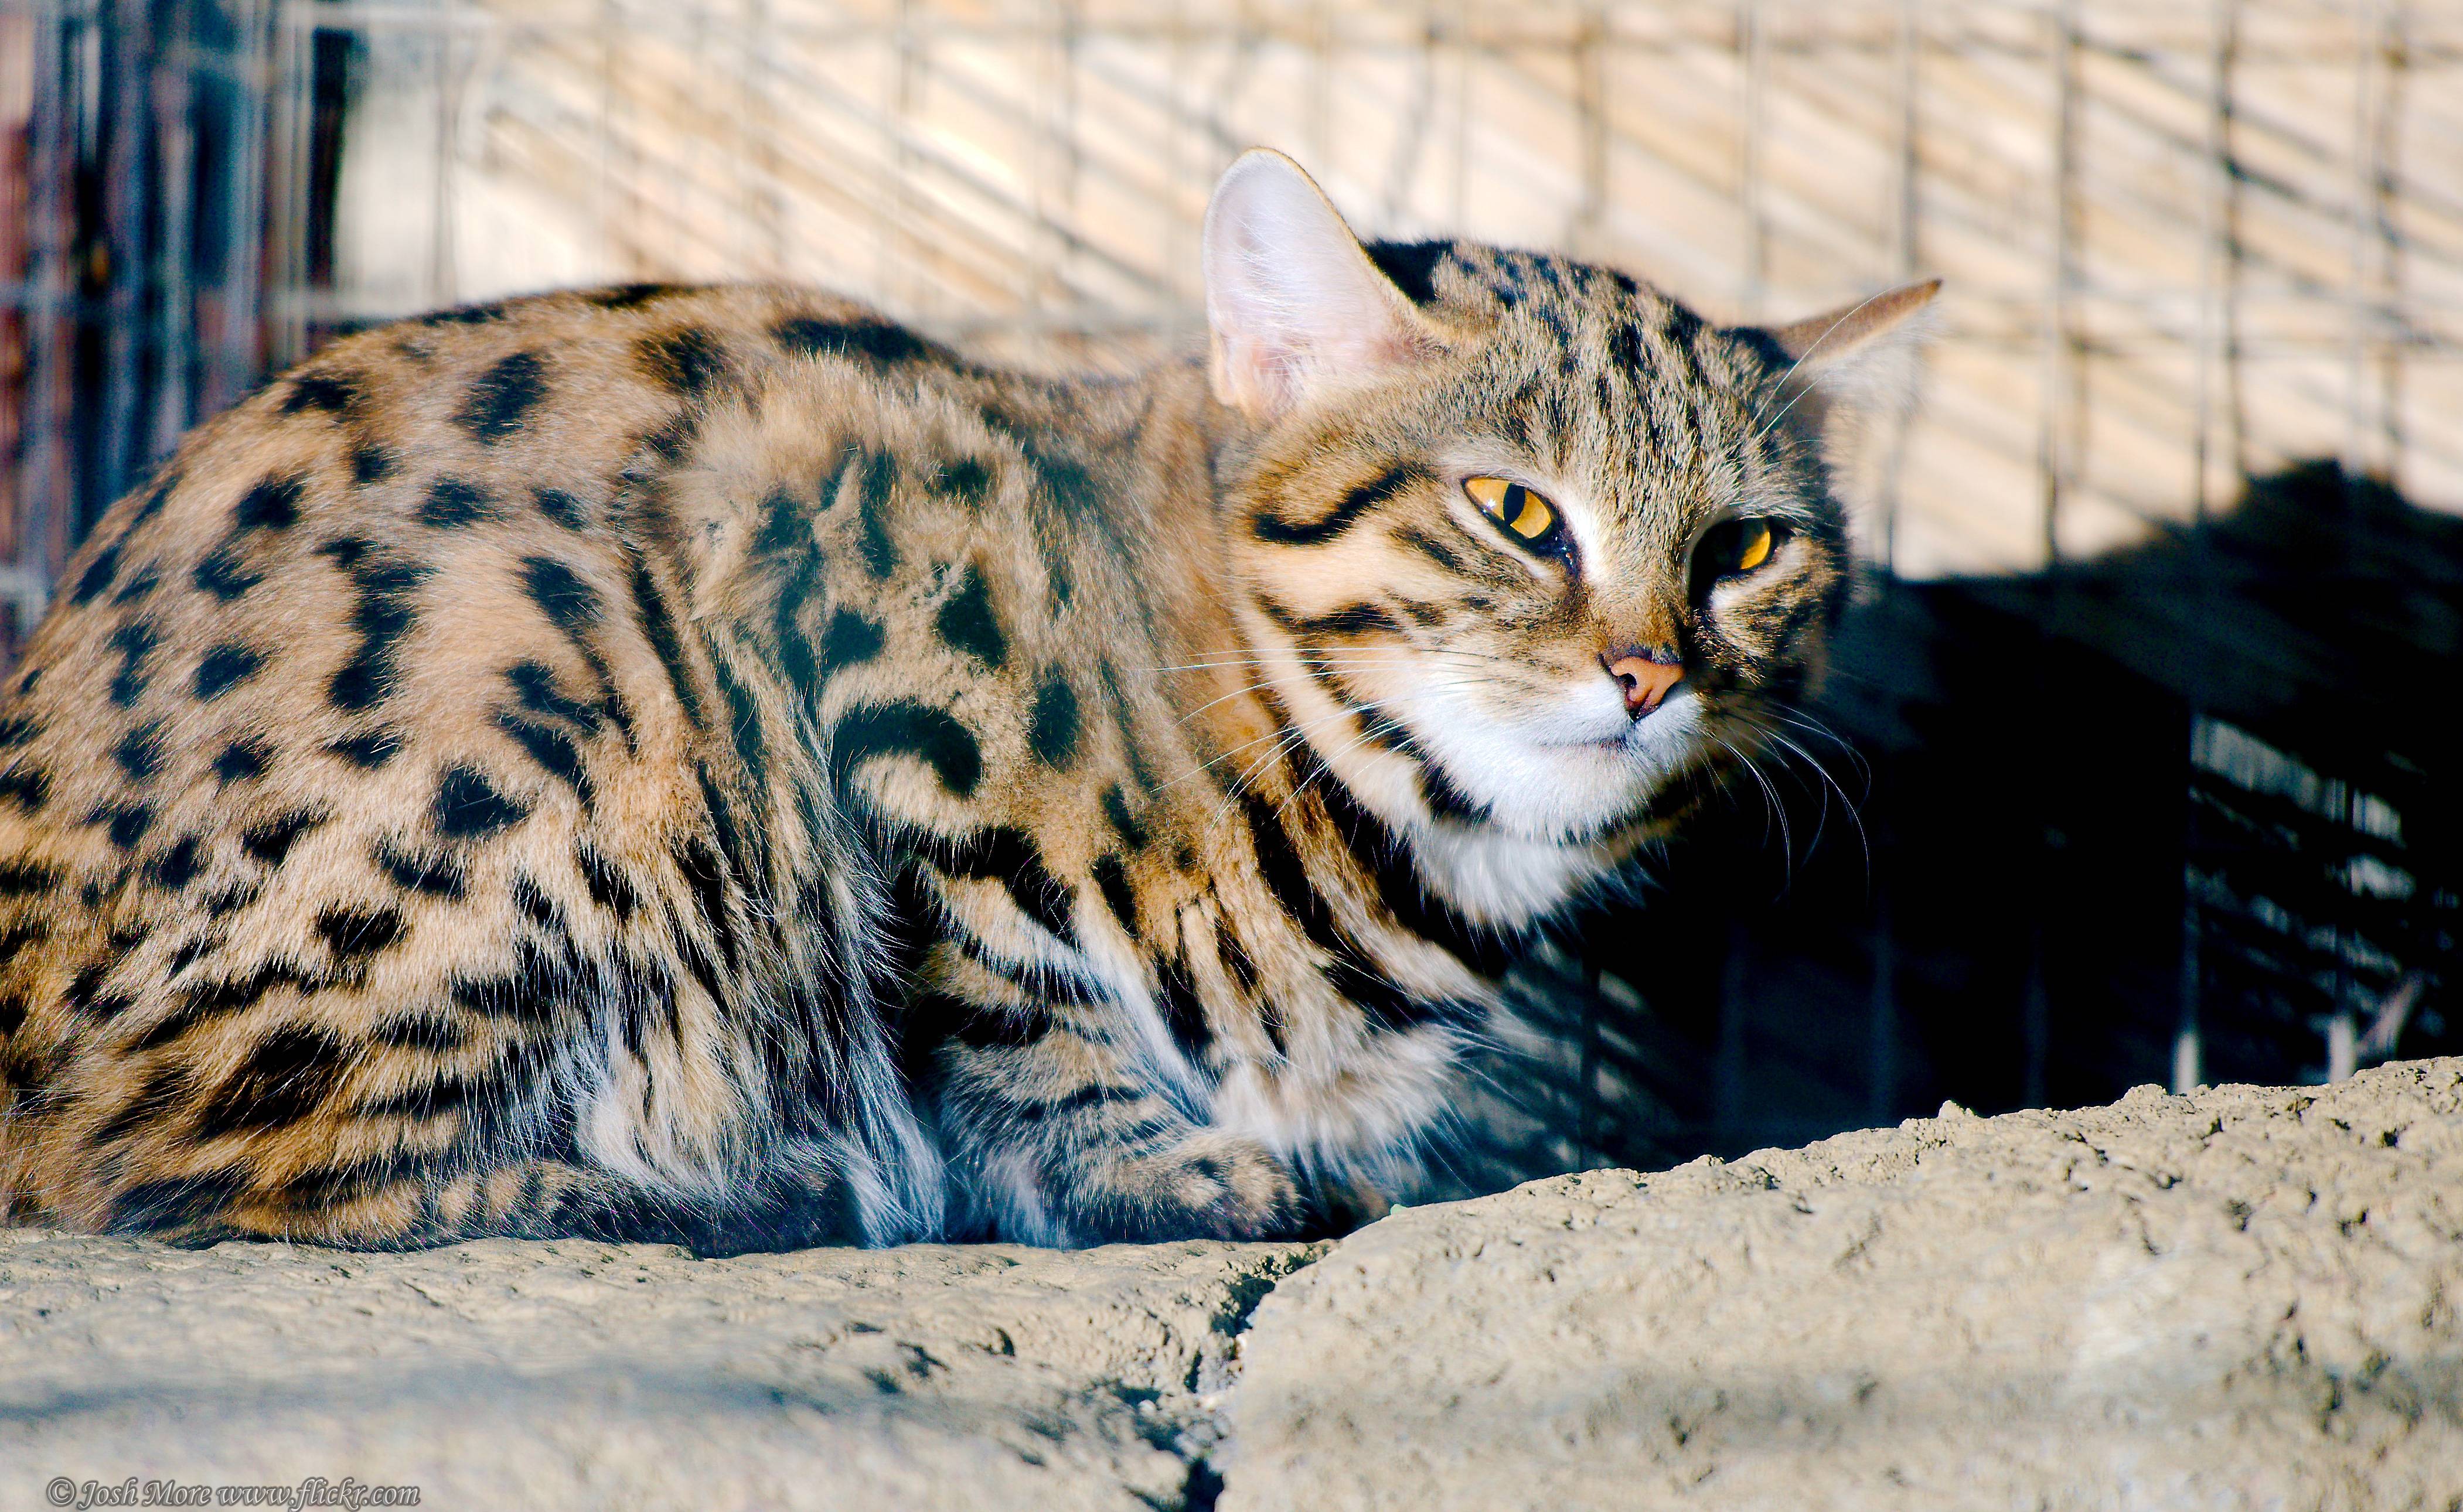 Кошка сервал: описание внешнего вида и характера, размножение, образ жизни и фото африканского кота, содержание в домашних условиях